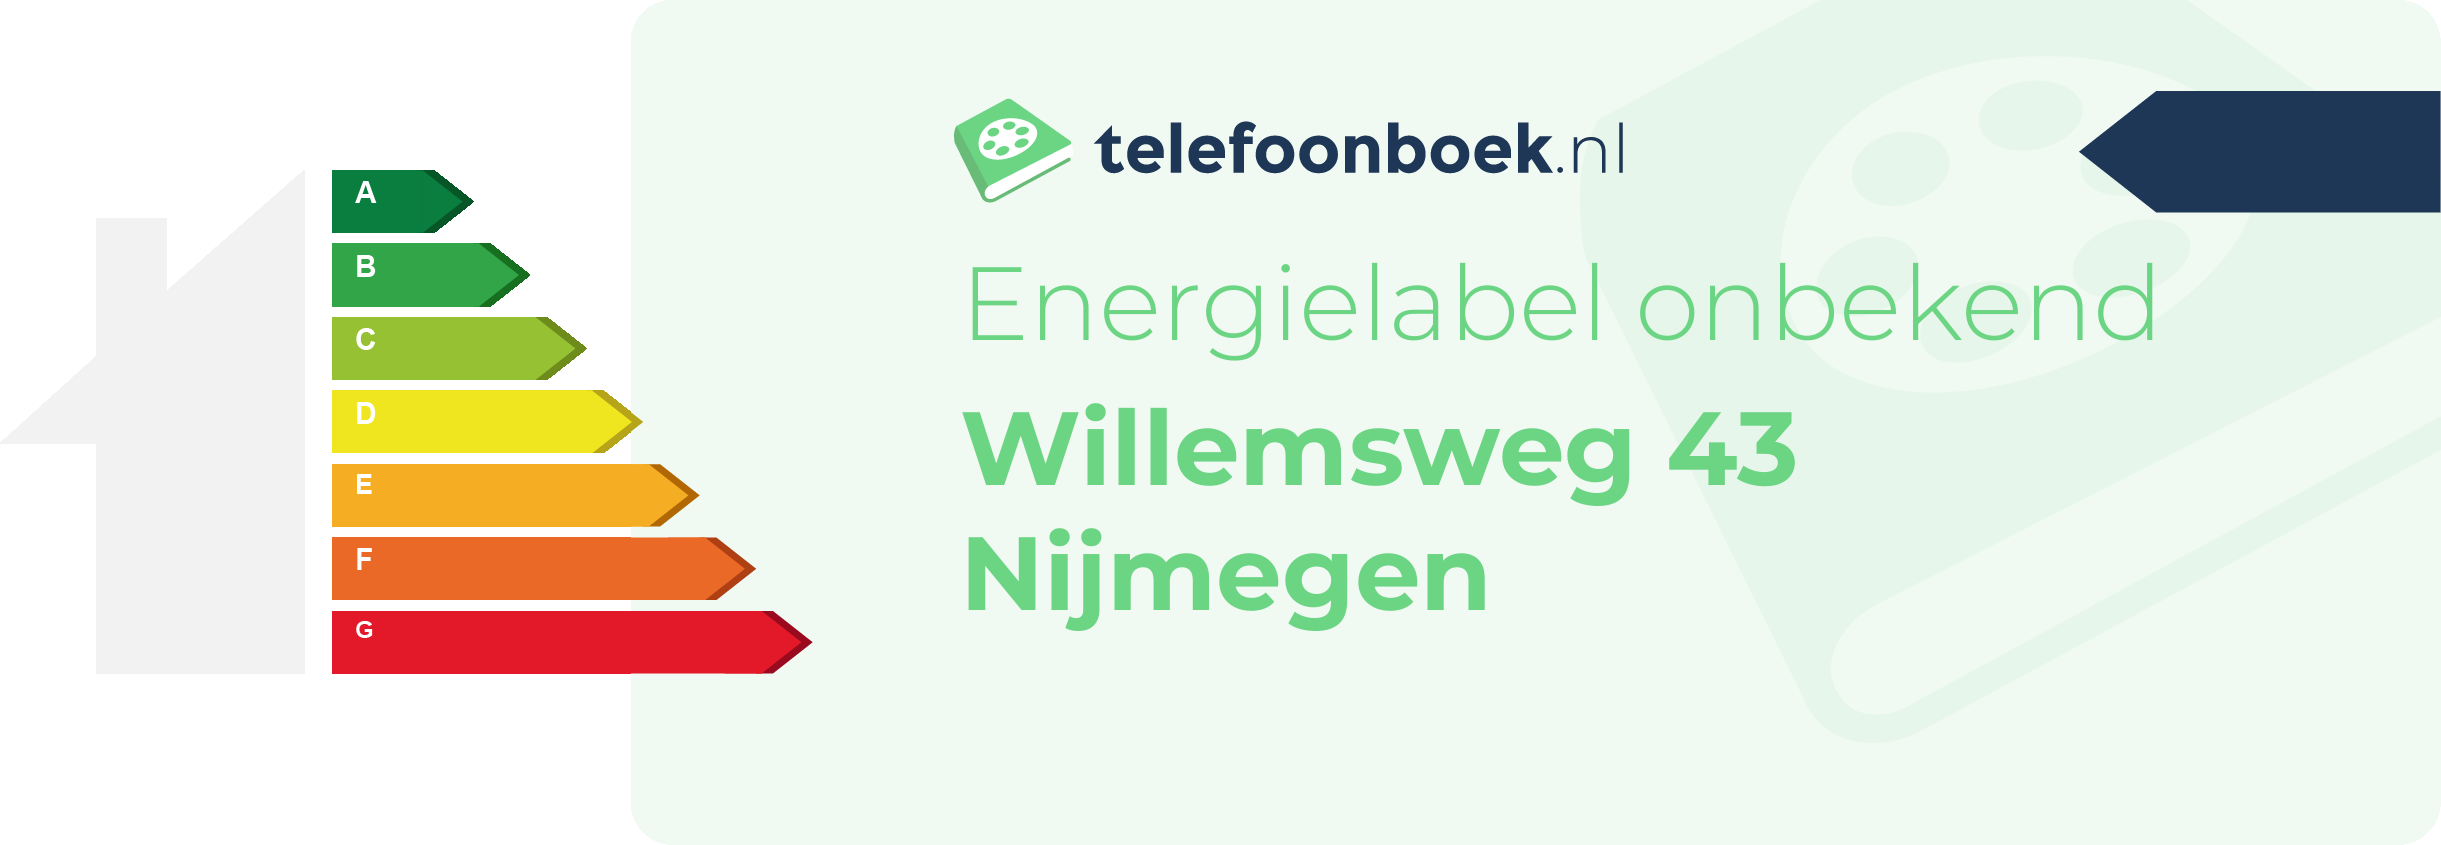 Energielabel Willemsweg 43 Nijmegen